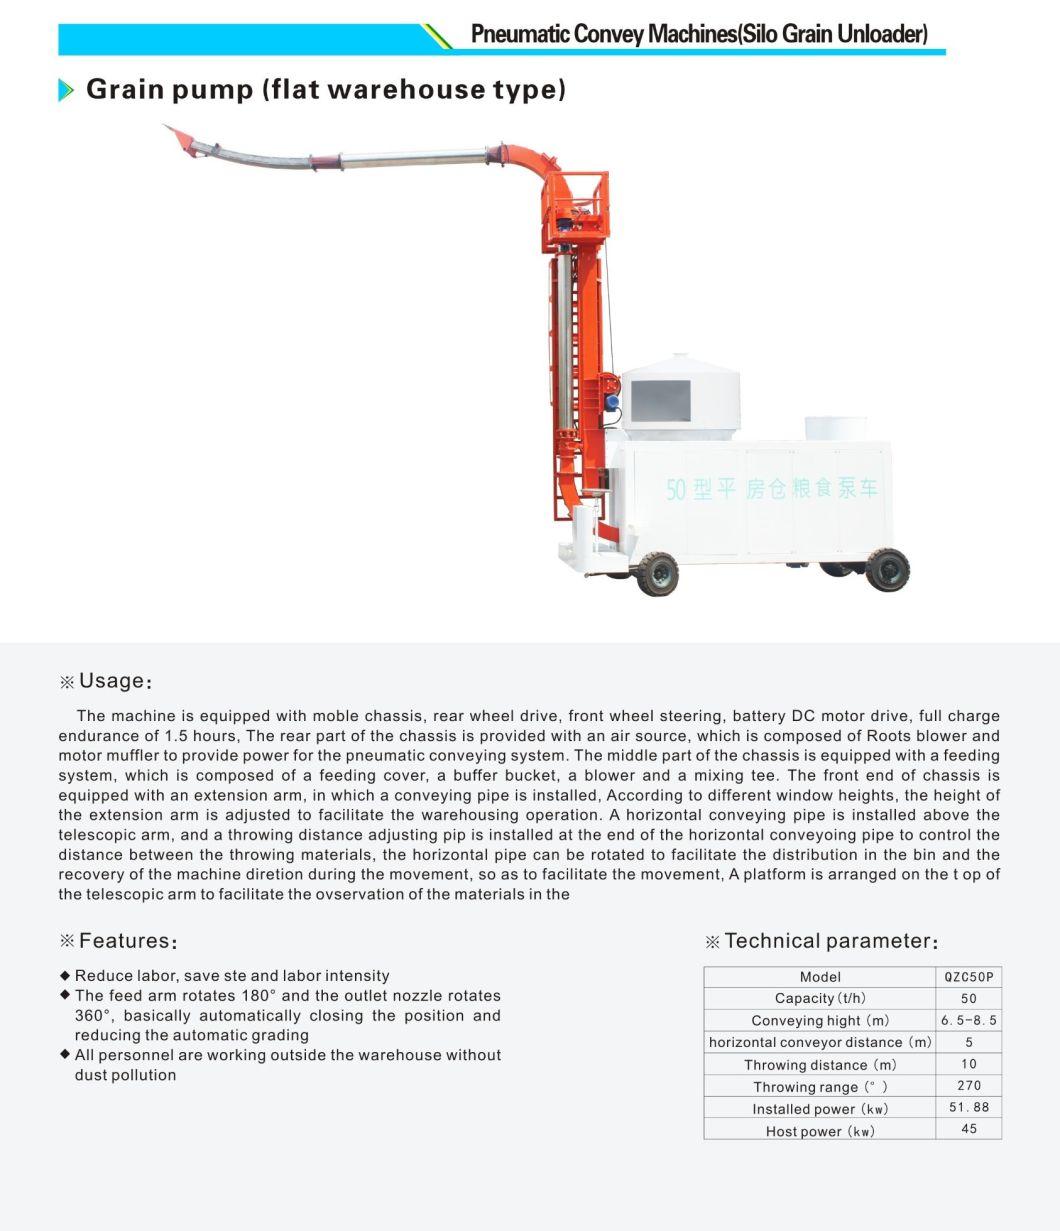 Hunan Xiangliang Machinery Manufacture Co., Ltd. Belt Conveyor Food Pump